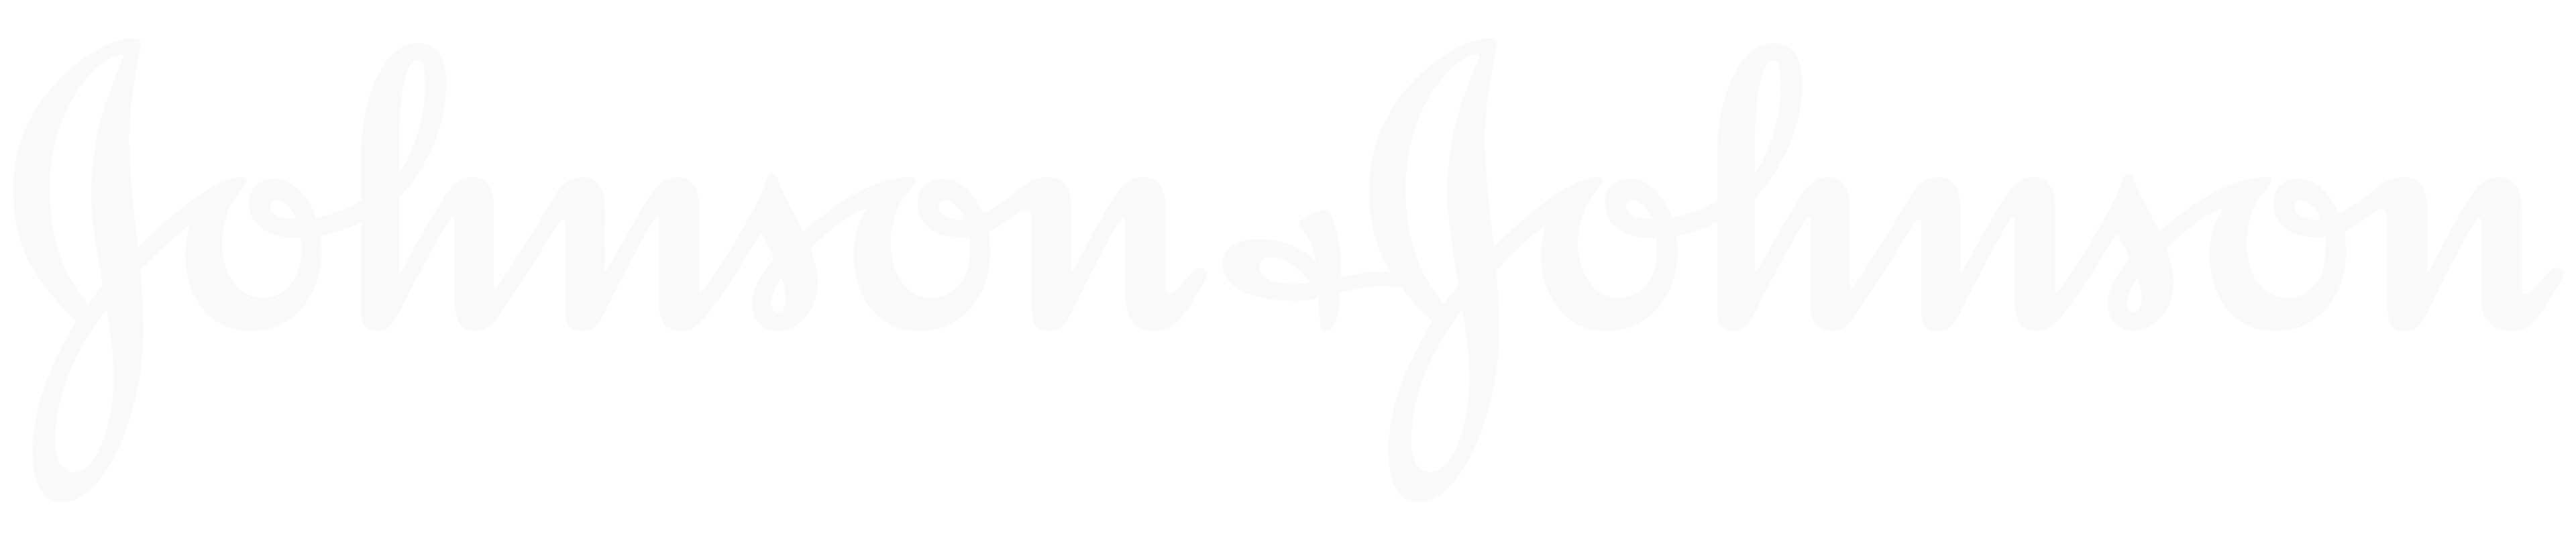 j&j logo-2